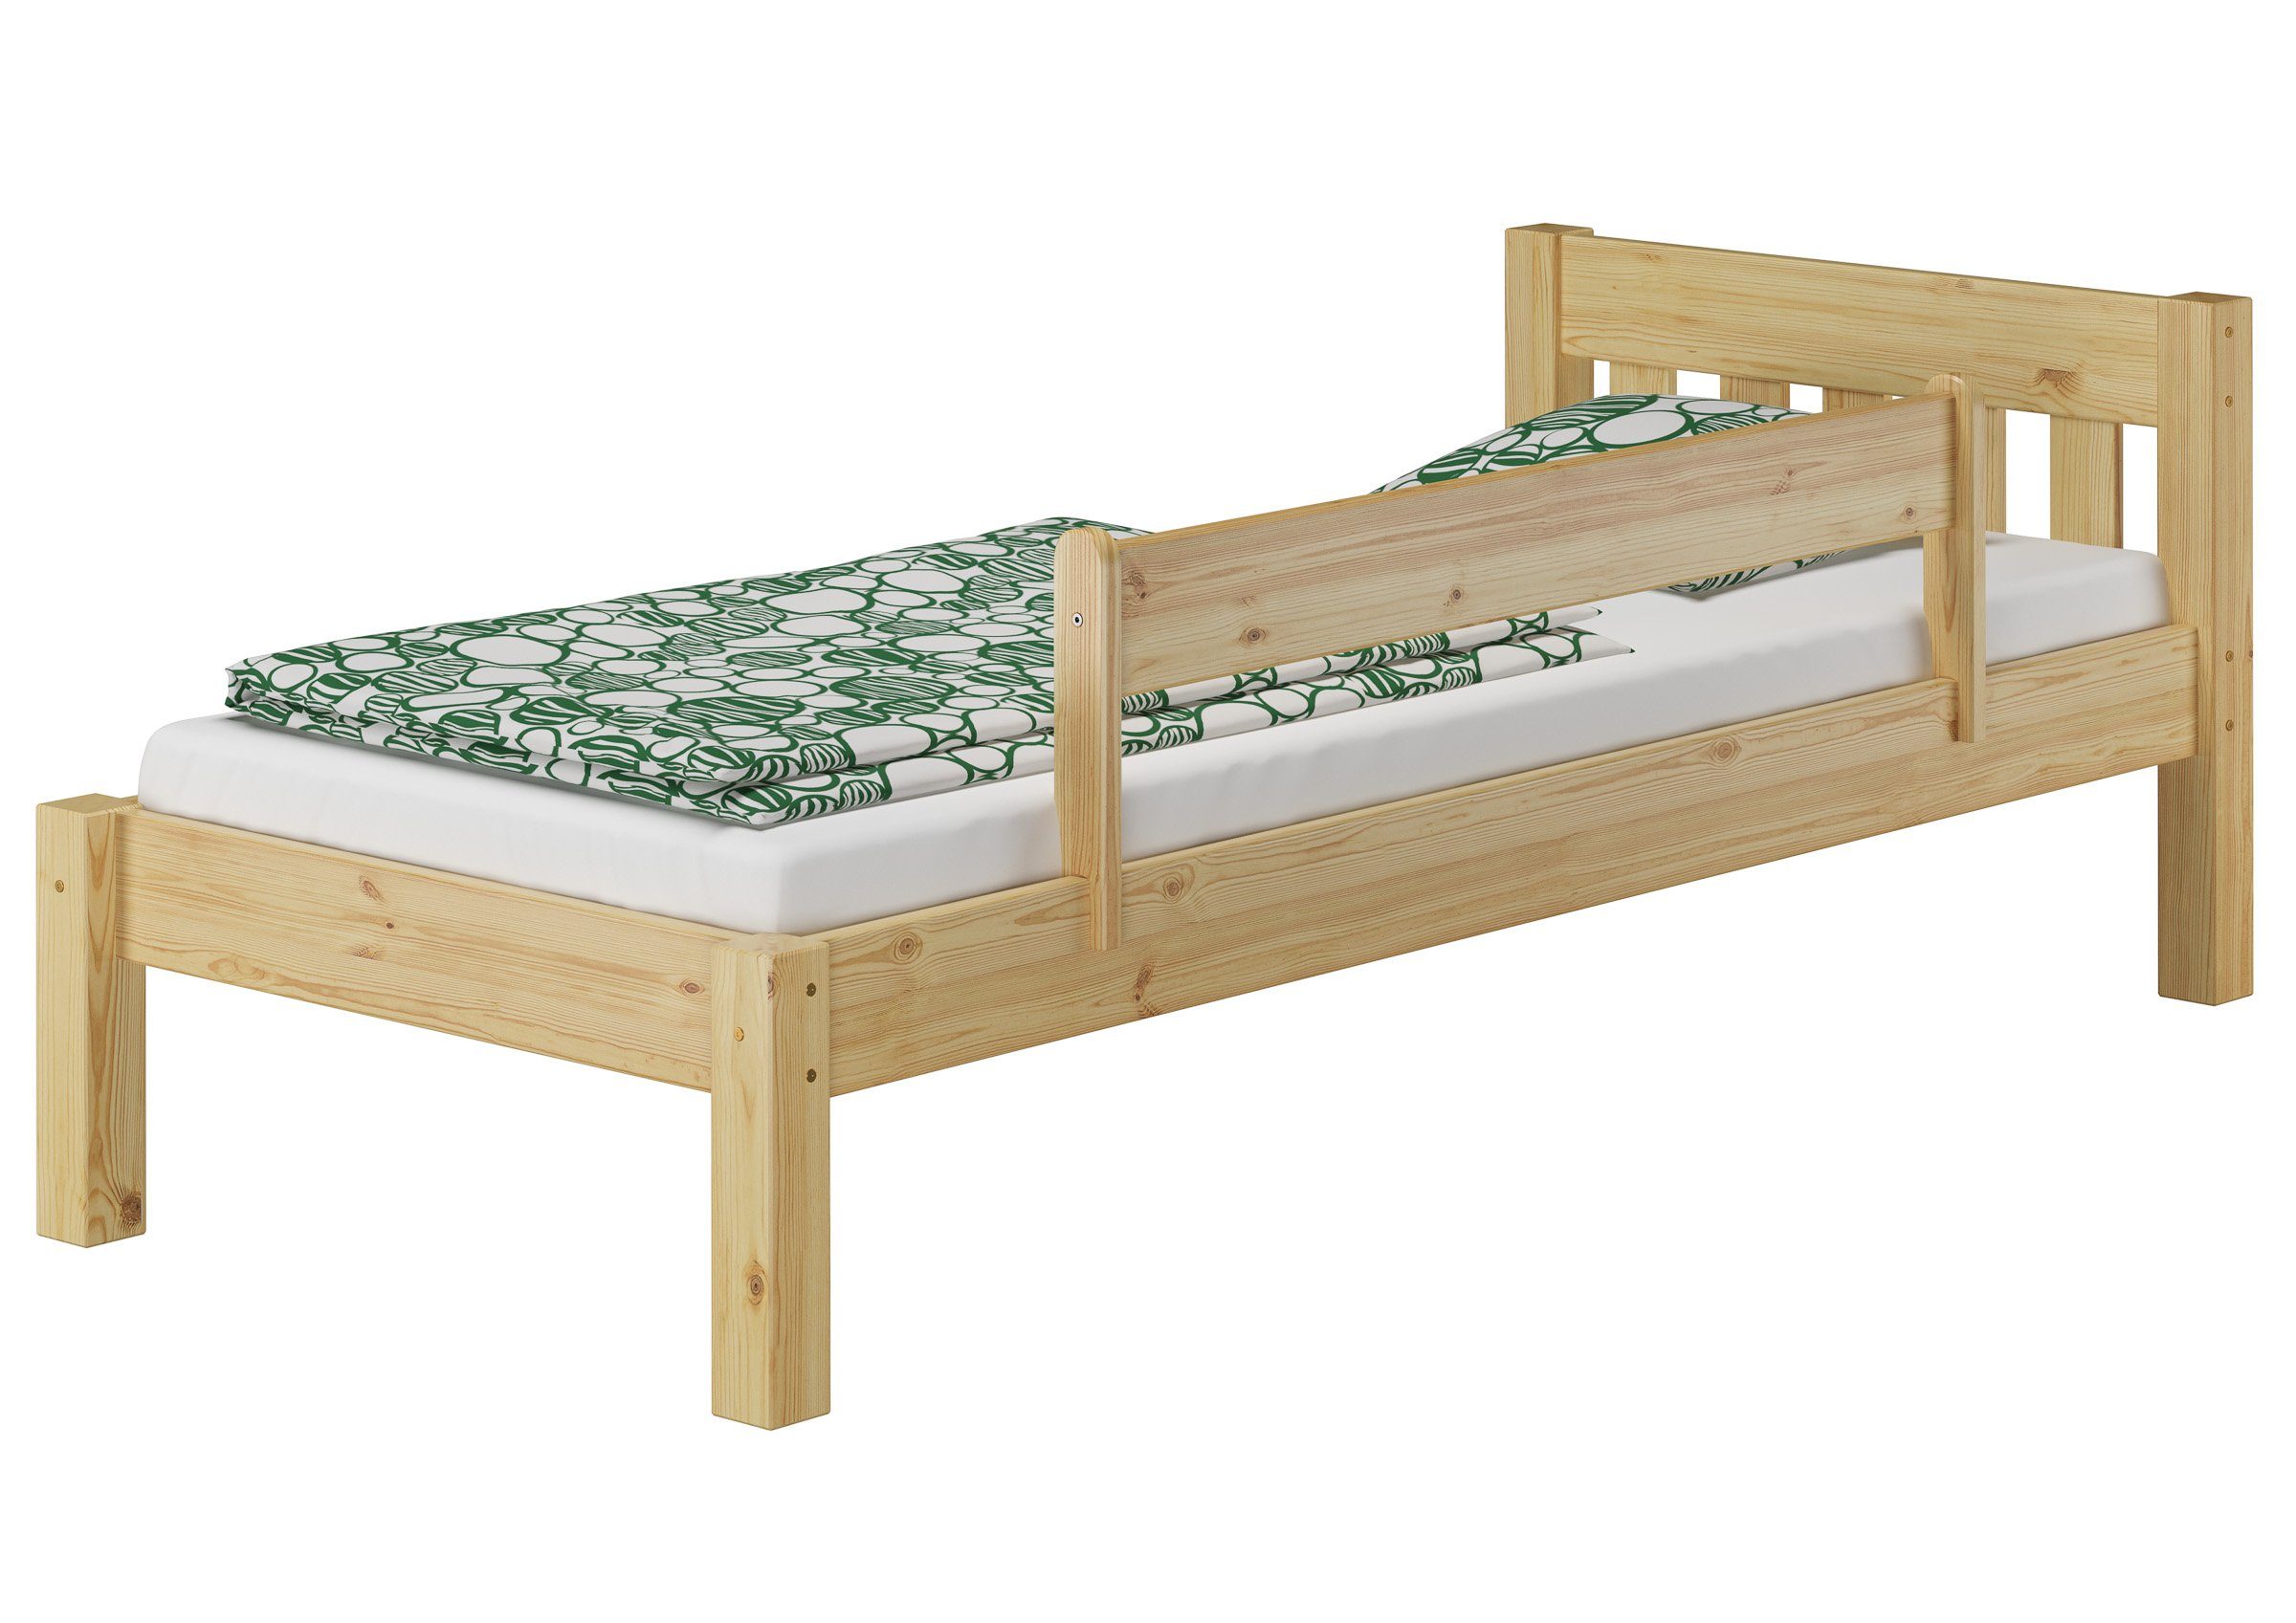 Rost ERST-HOLZ Kiefer 80x200 massiv lackiert mit Kieferfarblos Bett Jugendbett Matratze, und